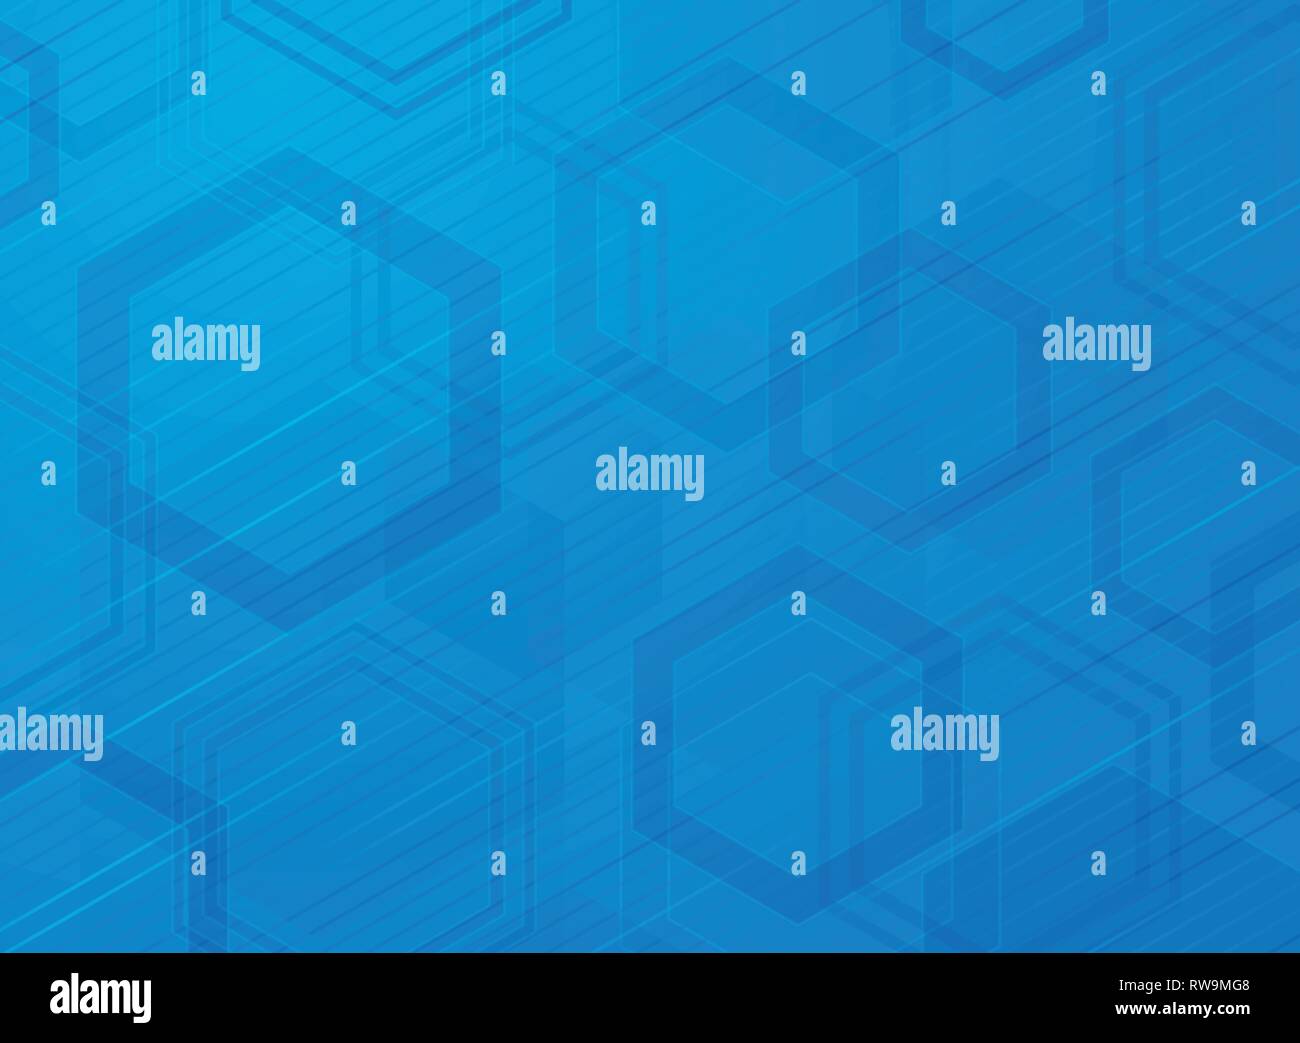 La technologie Résumé motif hexagonal bleu fond design moderne. La décoration en couleur à l'aide de conception de la dimension pour ad, affiche, brochure, copie espace, pr Illustration de Vecteur